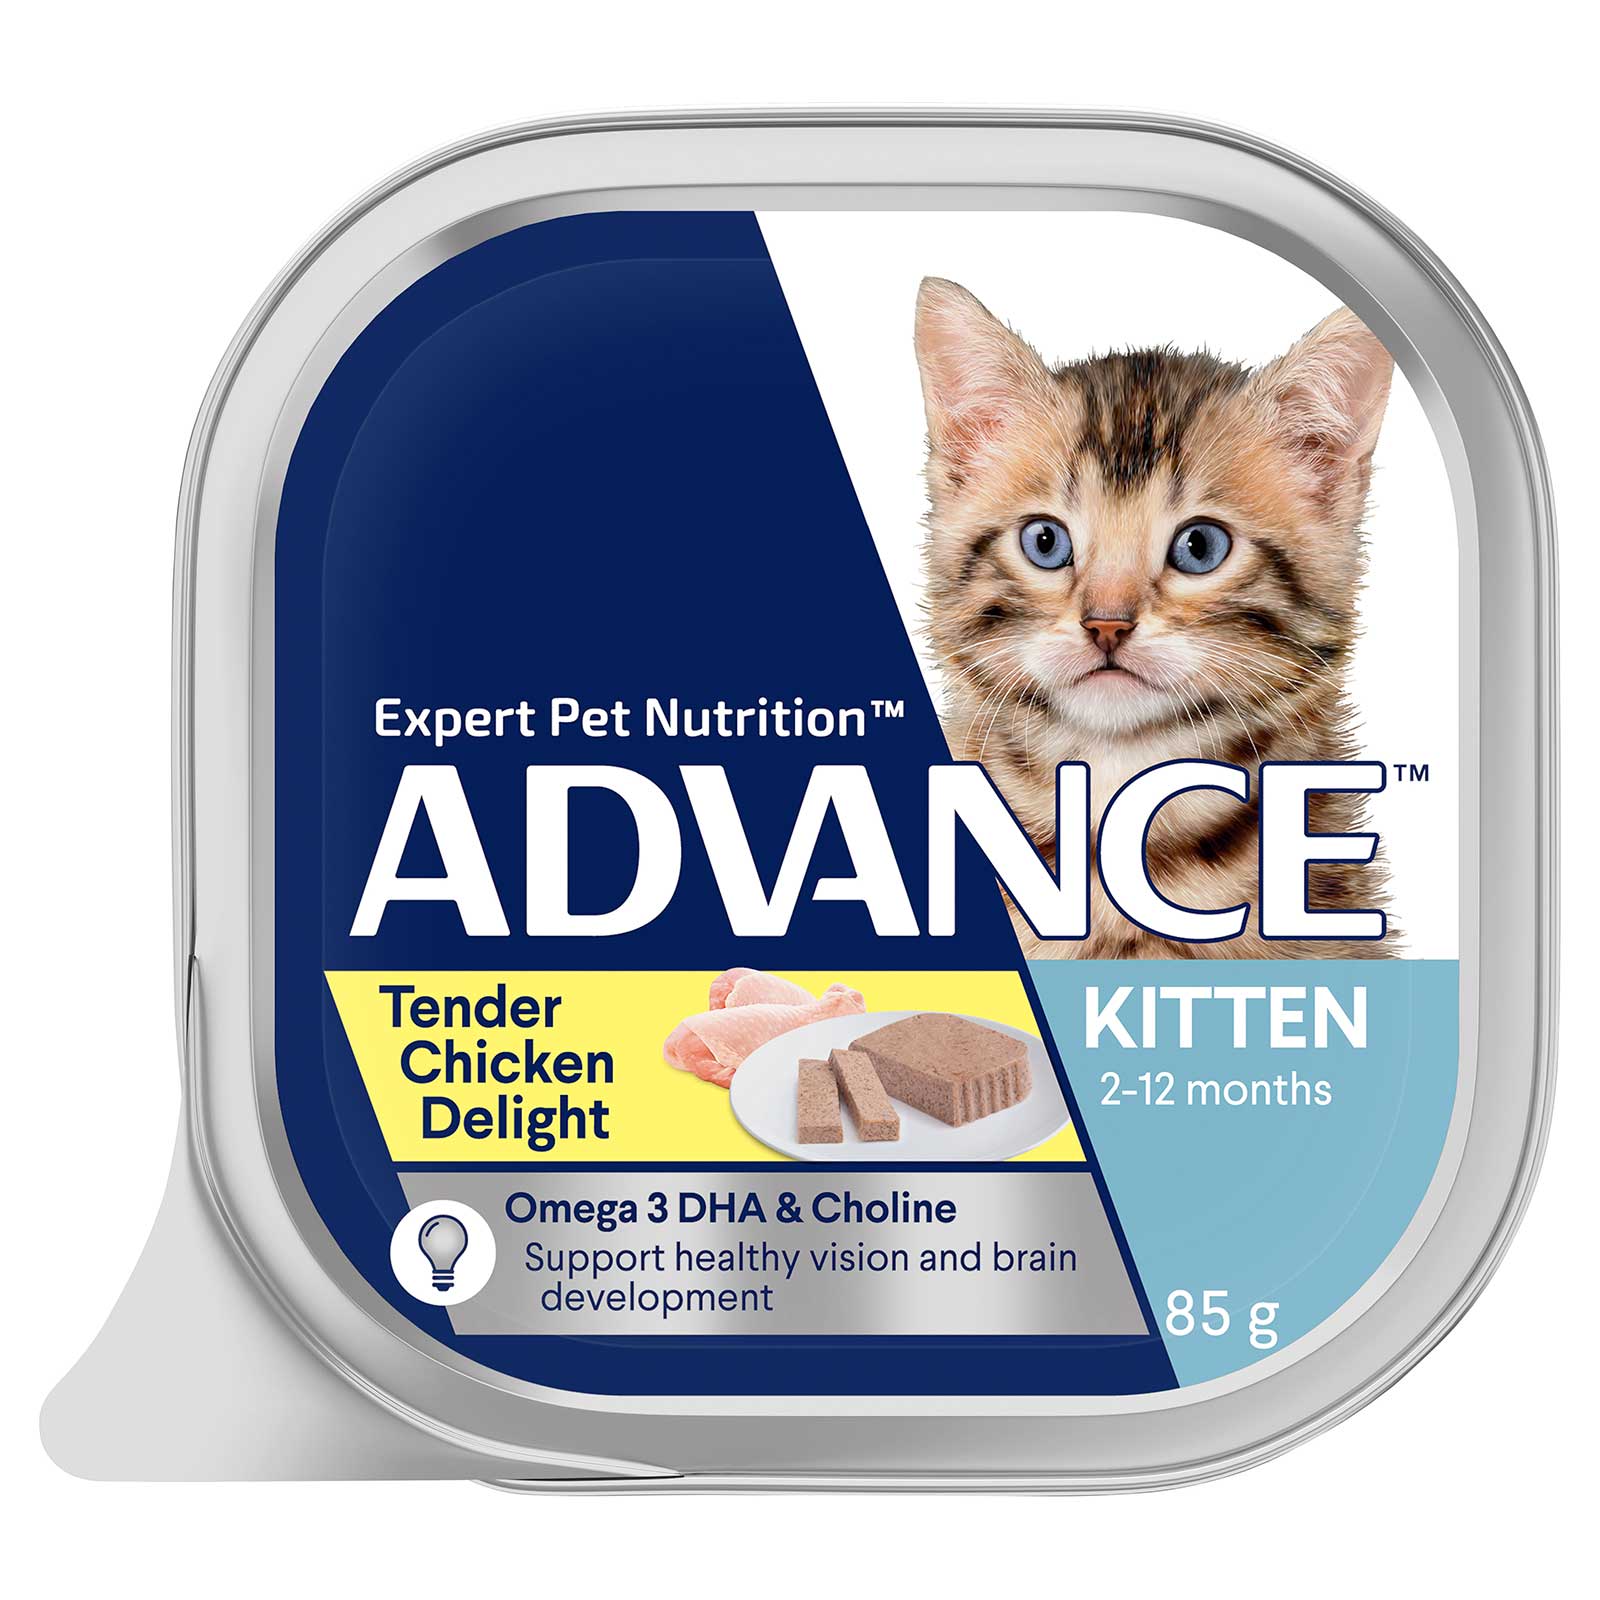 Advance Cat Food Tray Kitten Tender Chicken Delight